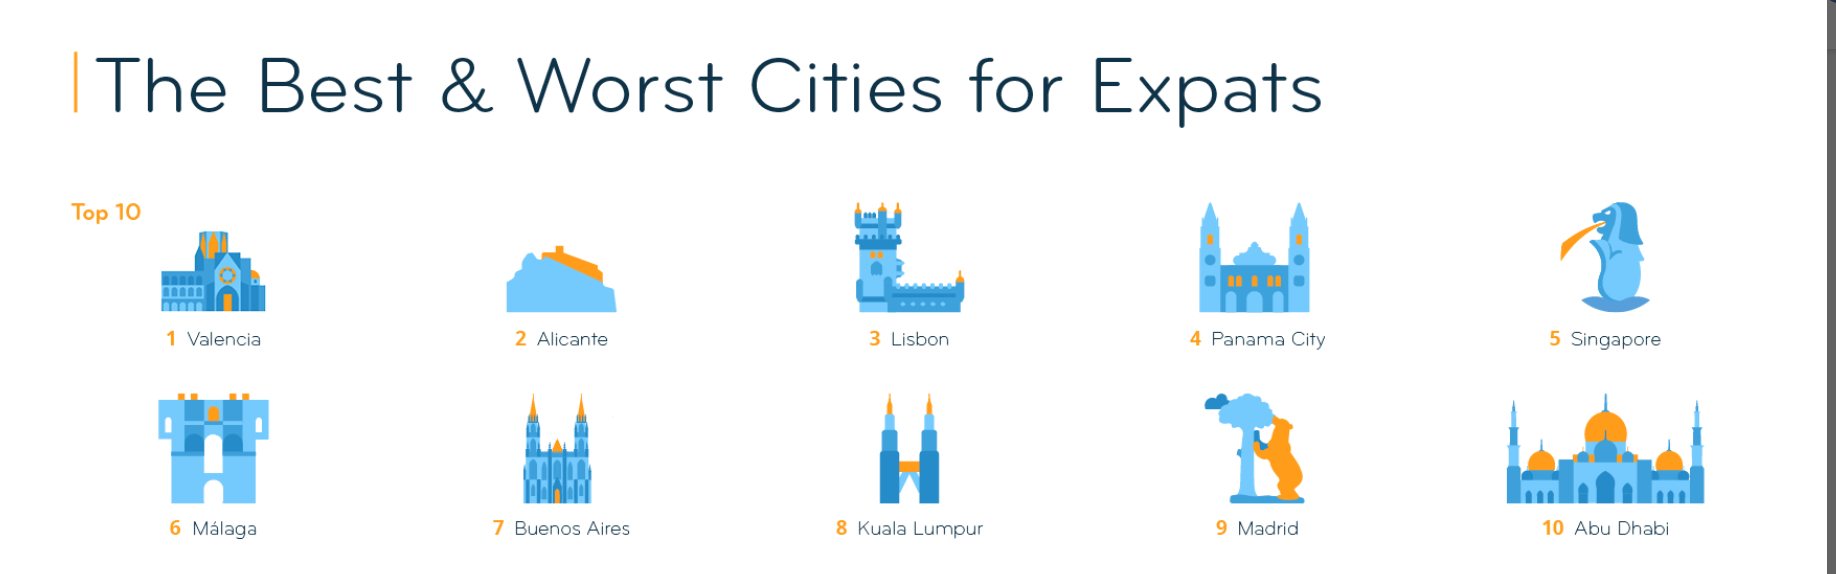 ranking van de beste steden voor expats 2020